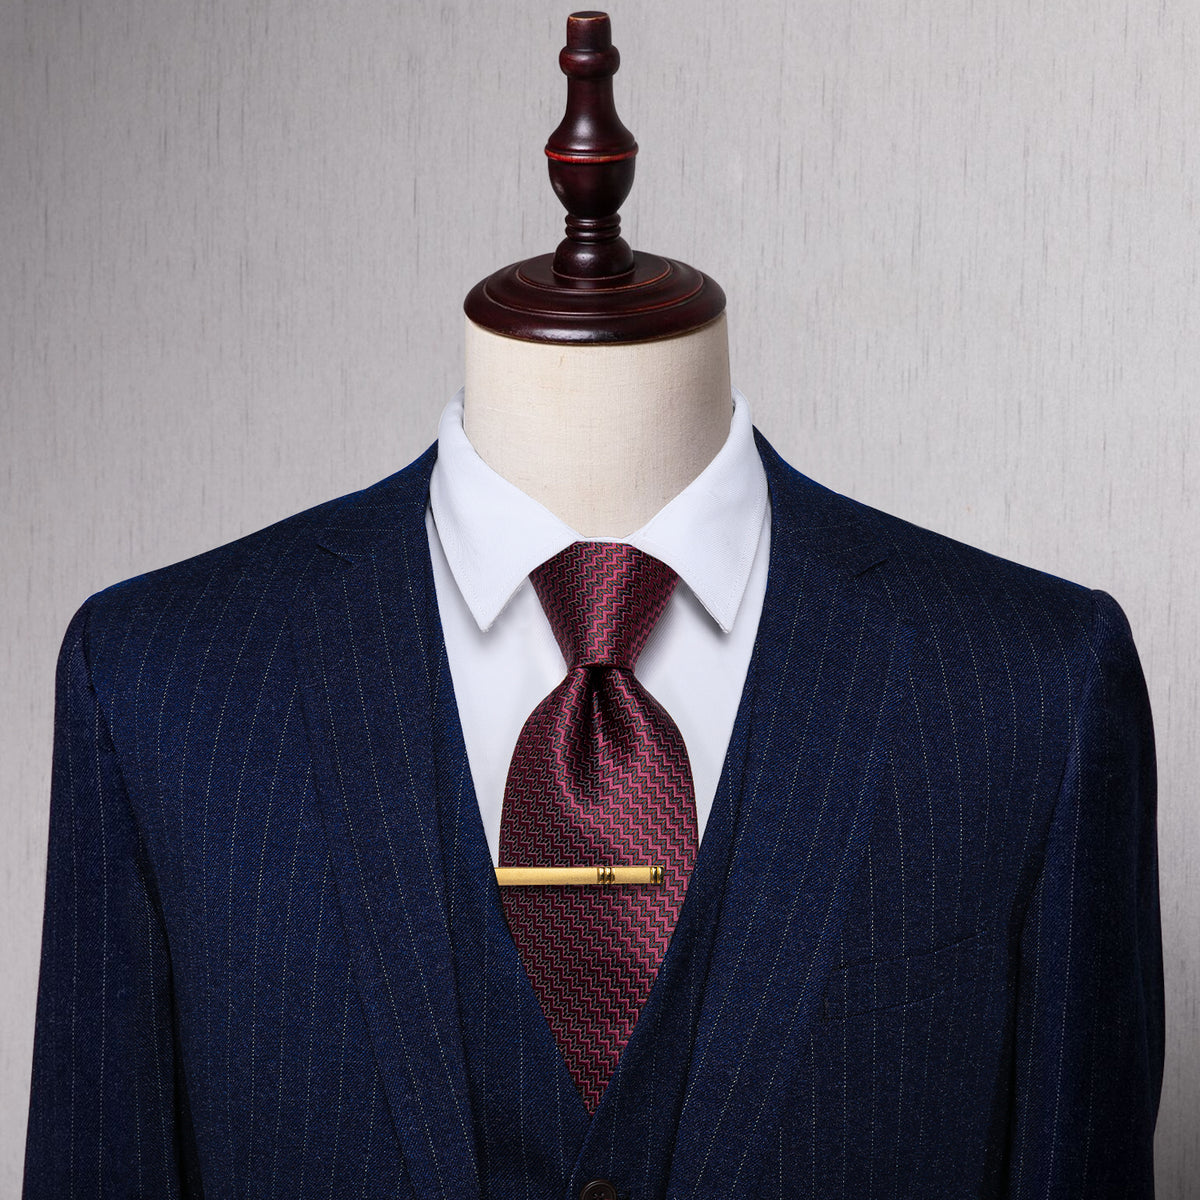 Burgundy Irregular Striped Silk Necktie with Golden Tie Clip